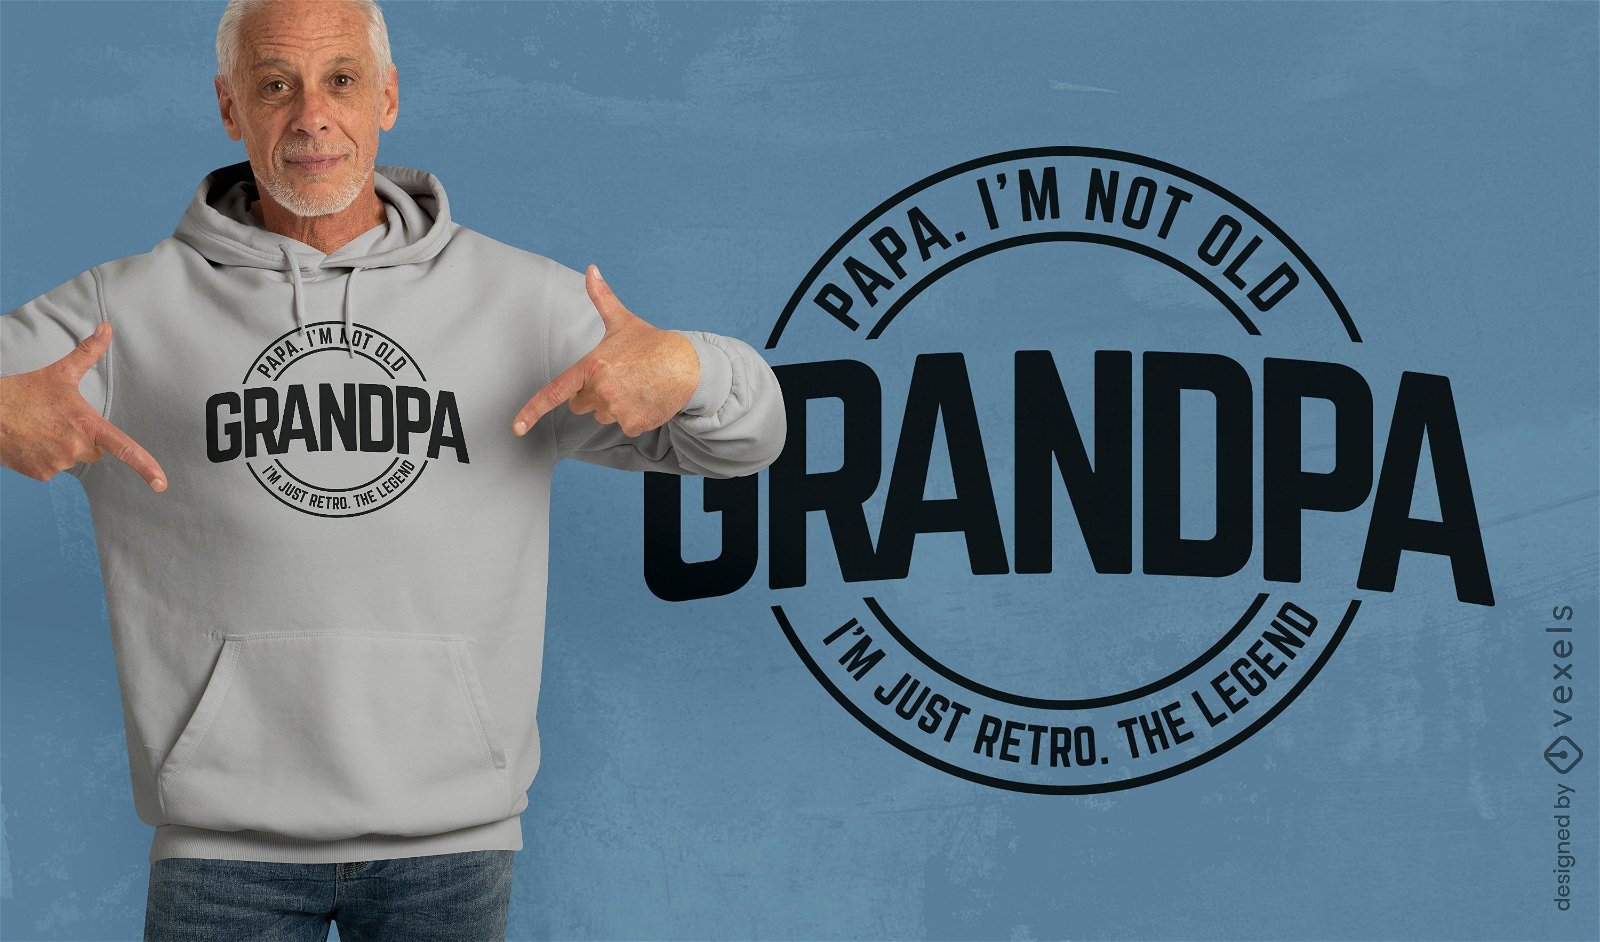 Funny grandpa quote t-shirt design